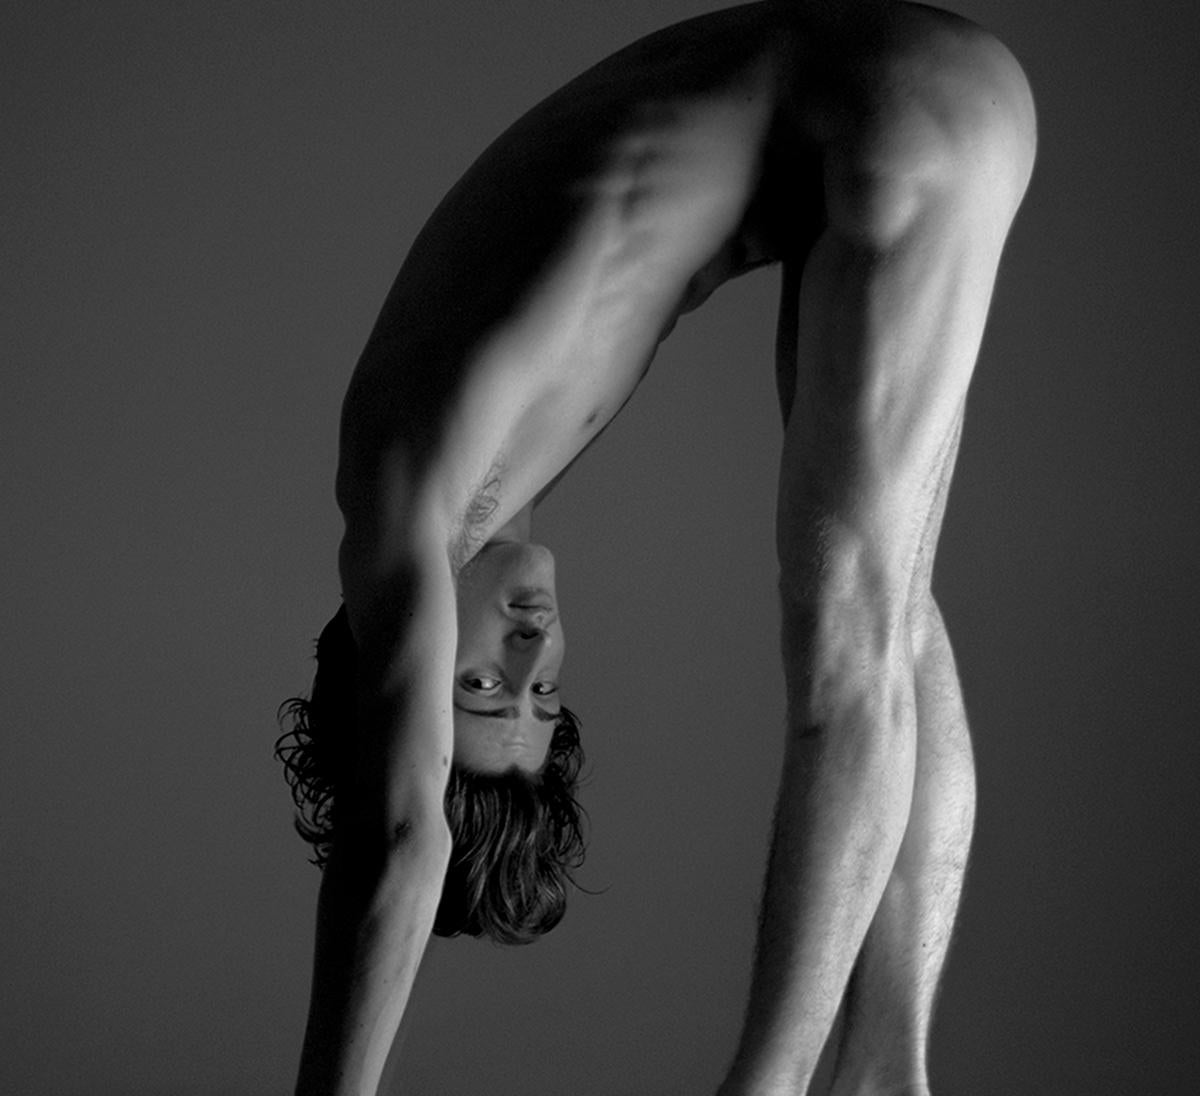 Bailarin I. Le Bailarin, série. Danseur nu masculin. Photographie en noir et blanc - Noir Black and White Photograph par Ricky Cohete